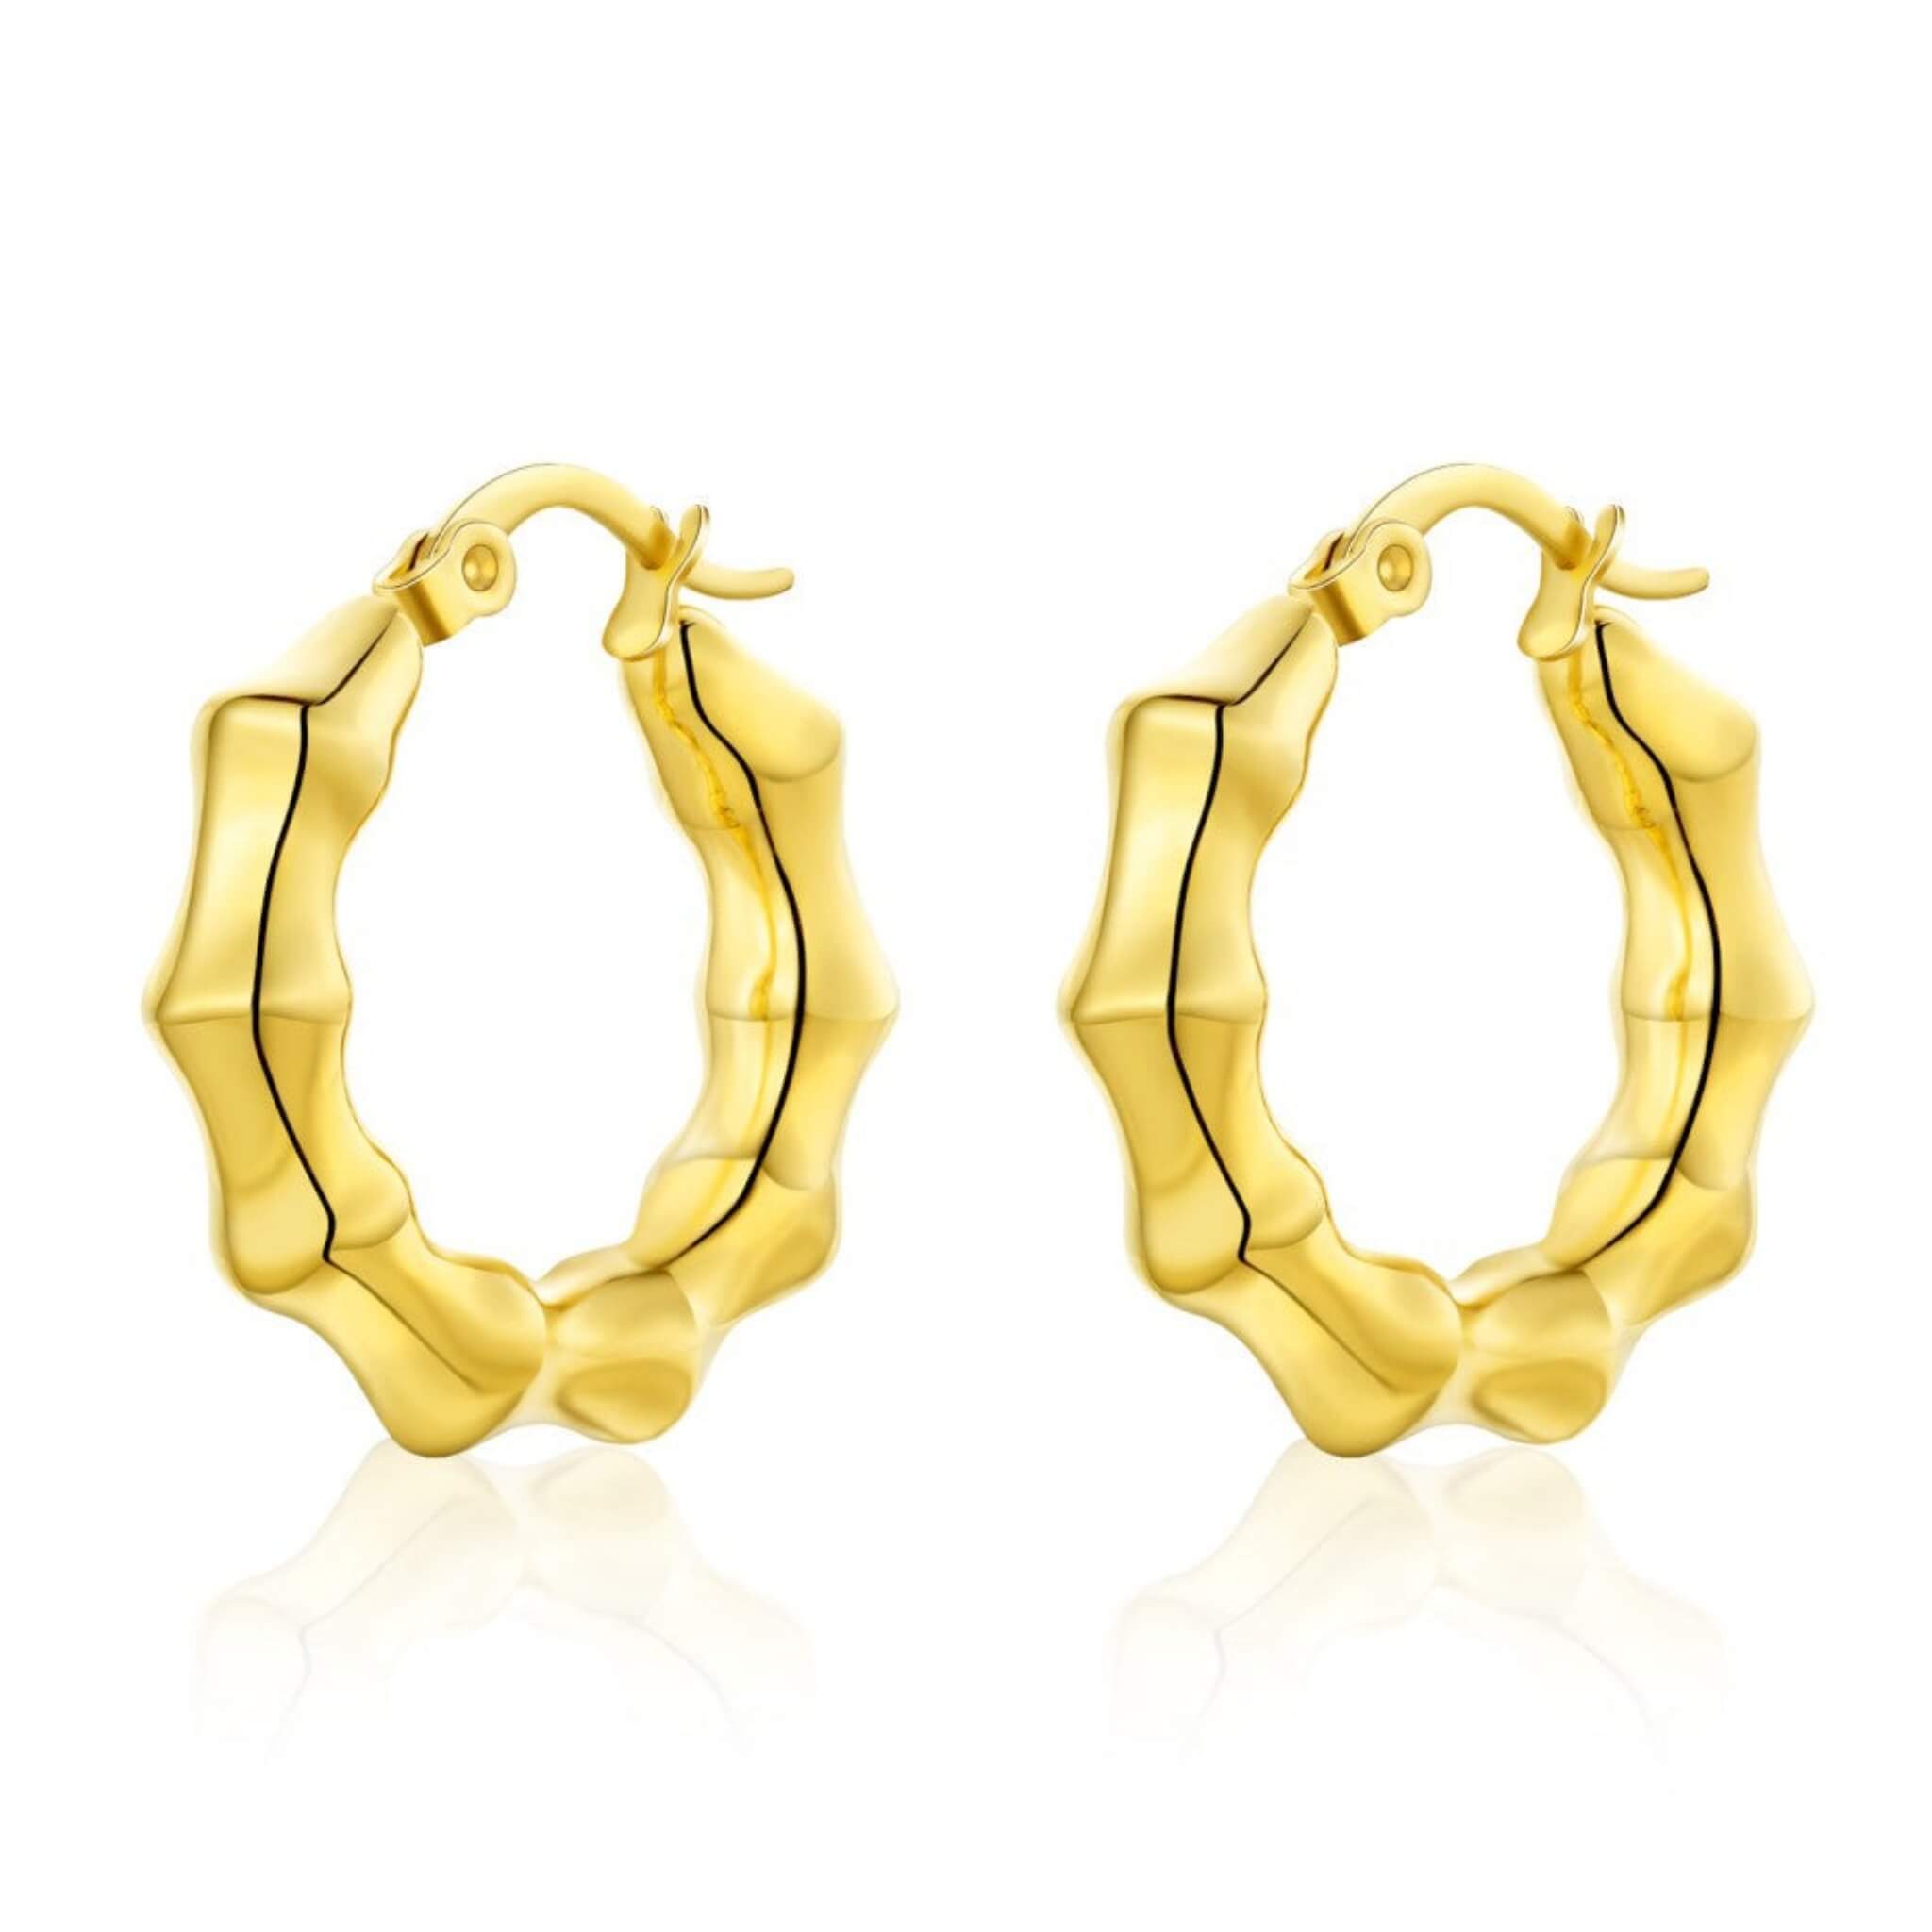 Irregular Pattern French Earrings  UponBasics Golden E916-GO 